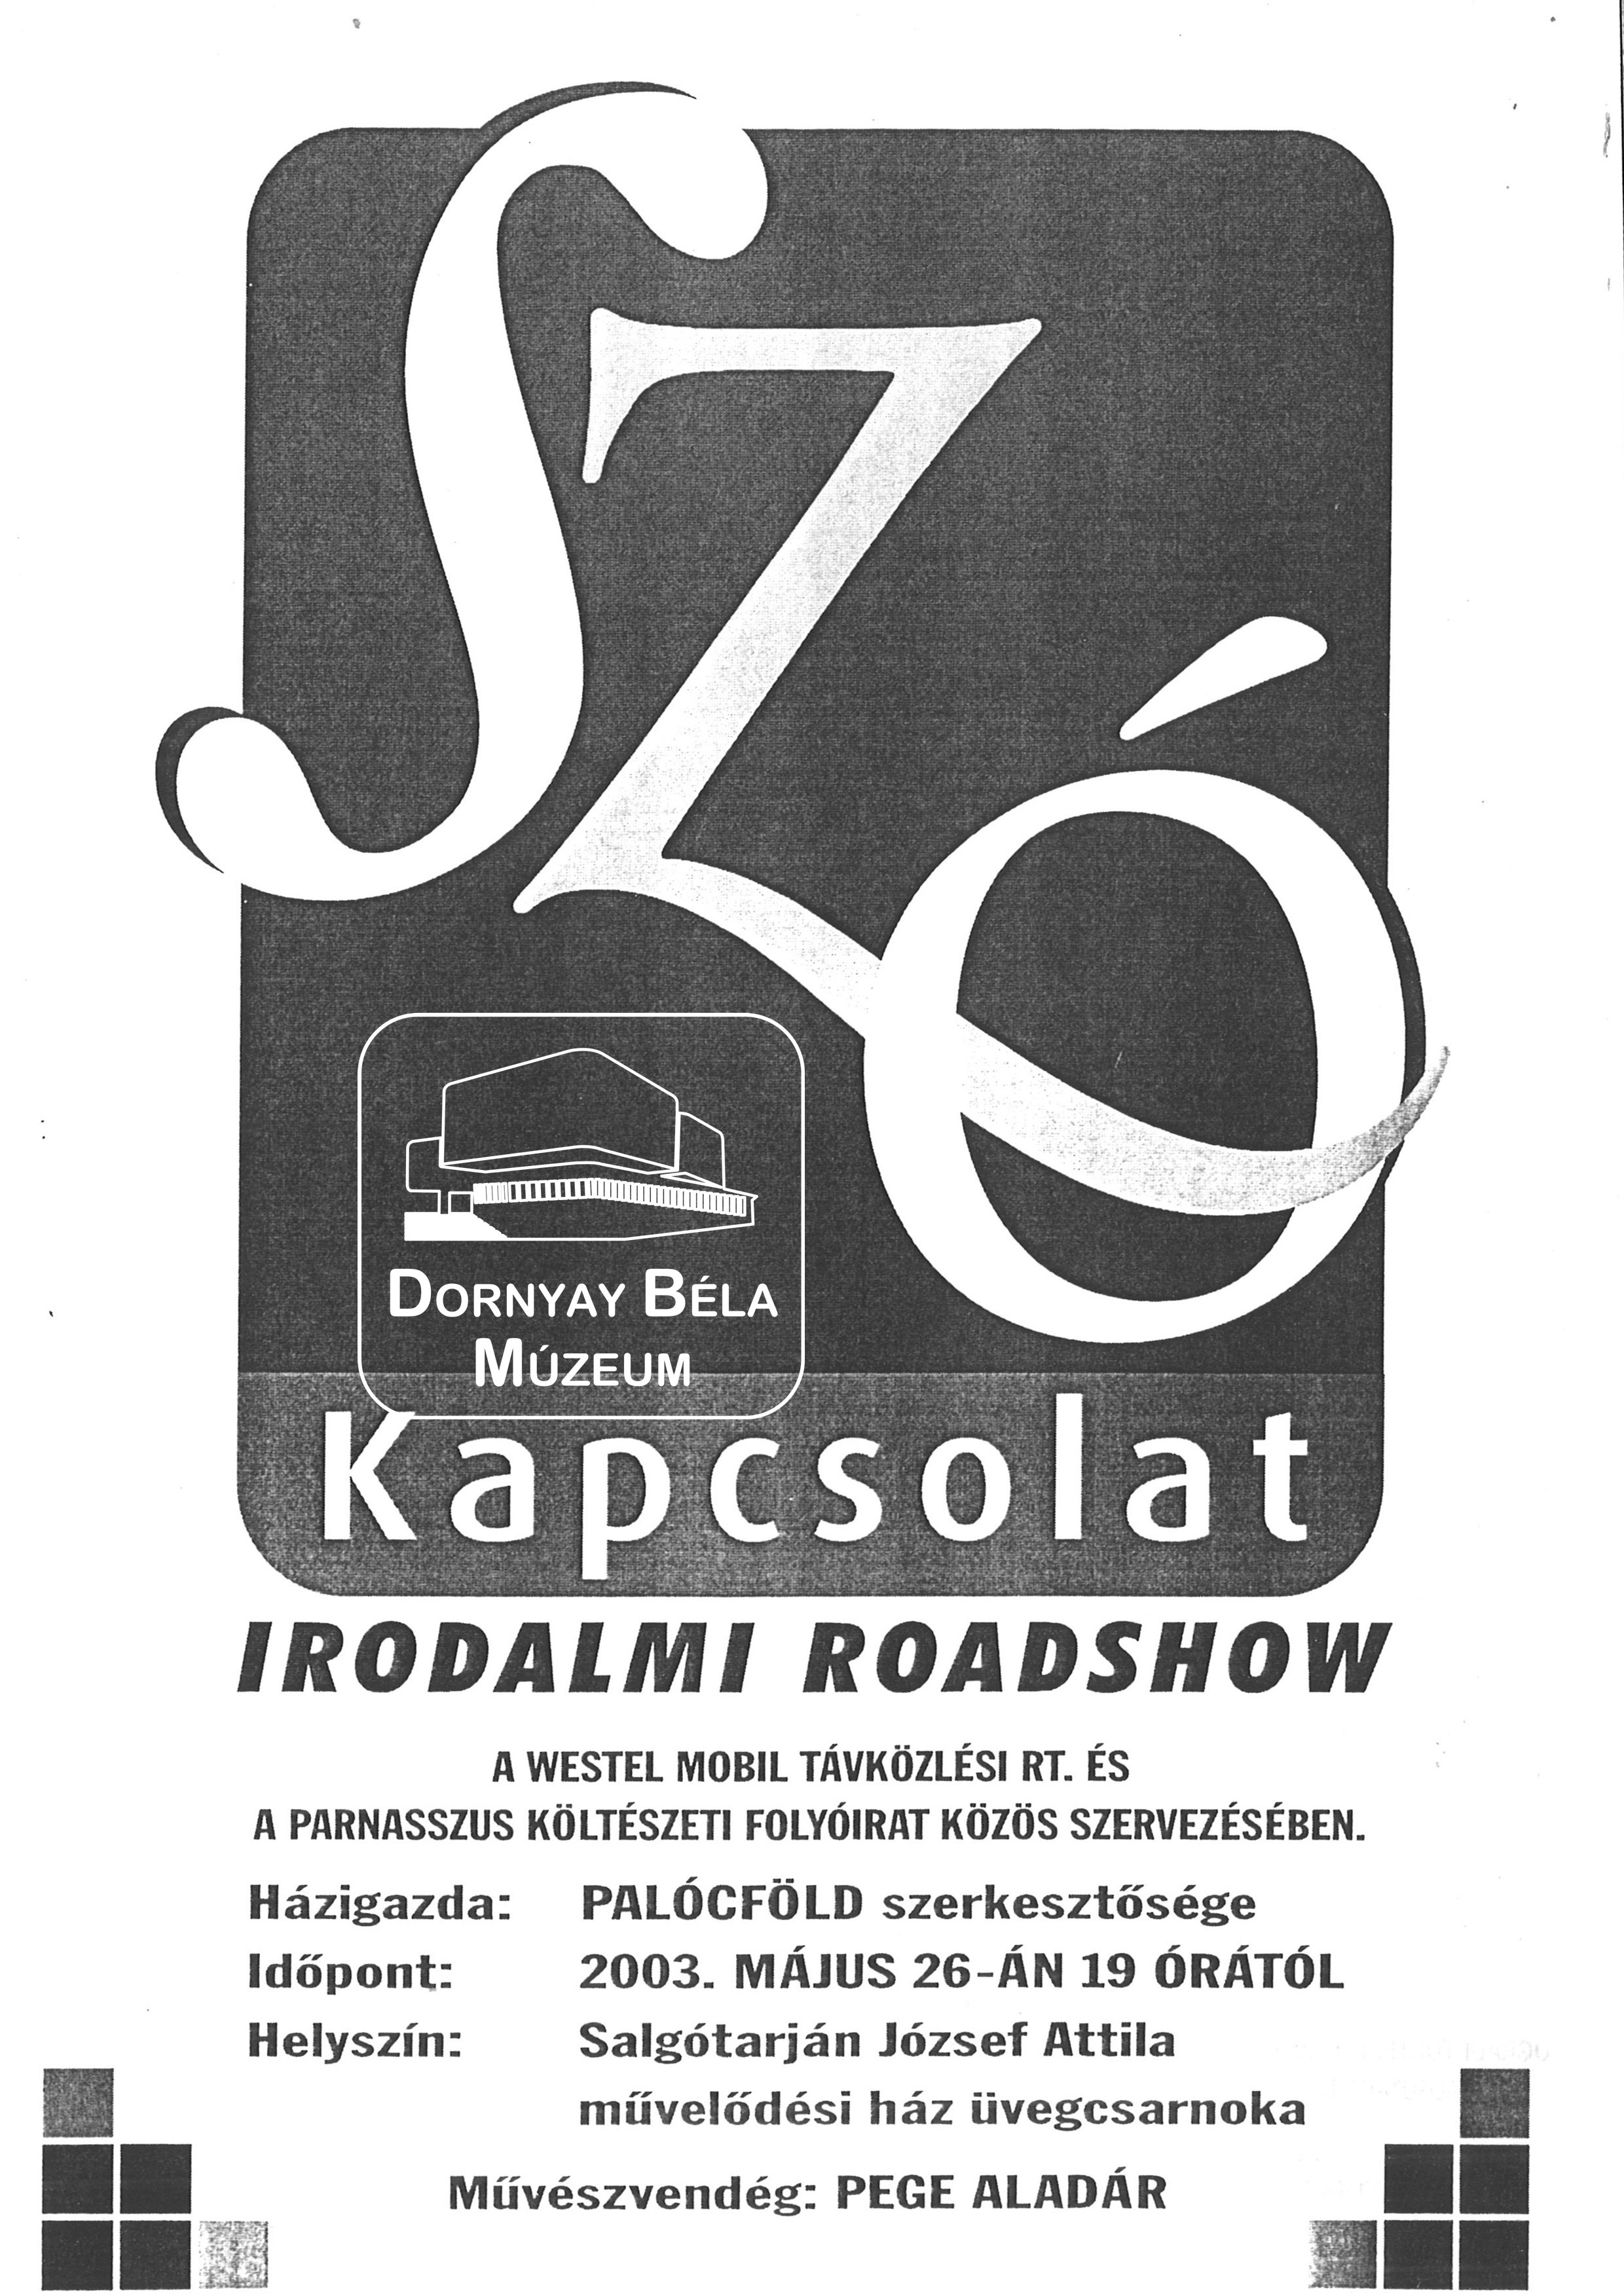 Szó-kapcsolat. Irodalmi roadshow a József Attila Műv.Házban (Dornyay Béla Múzeum, Salgótarján CC BY-NC-SA)